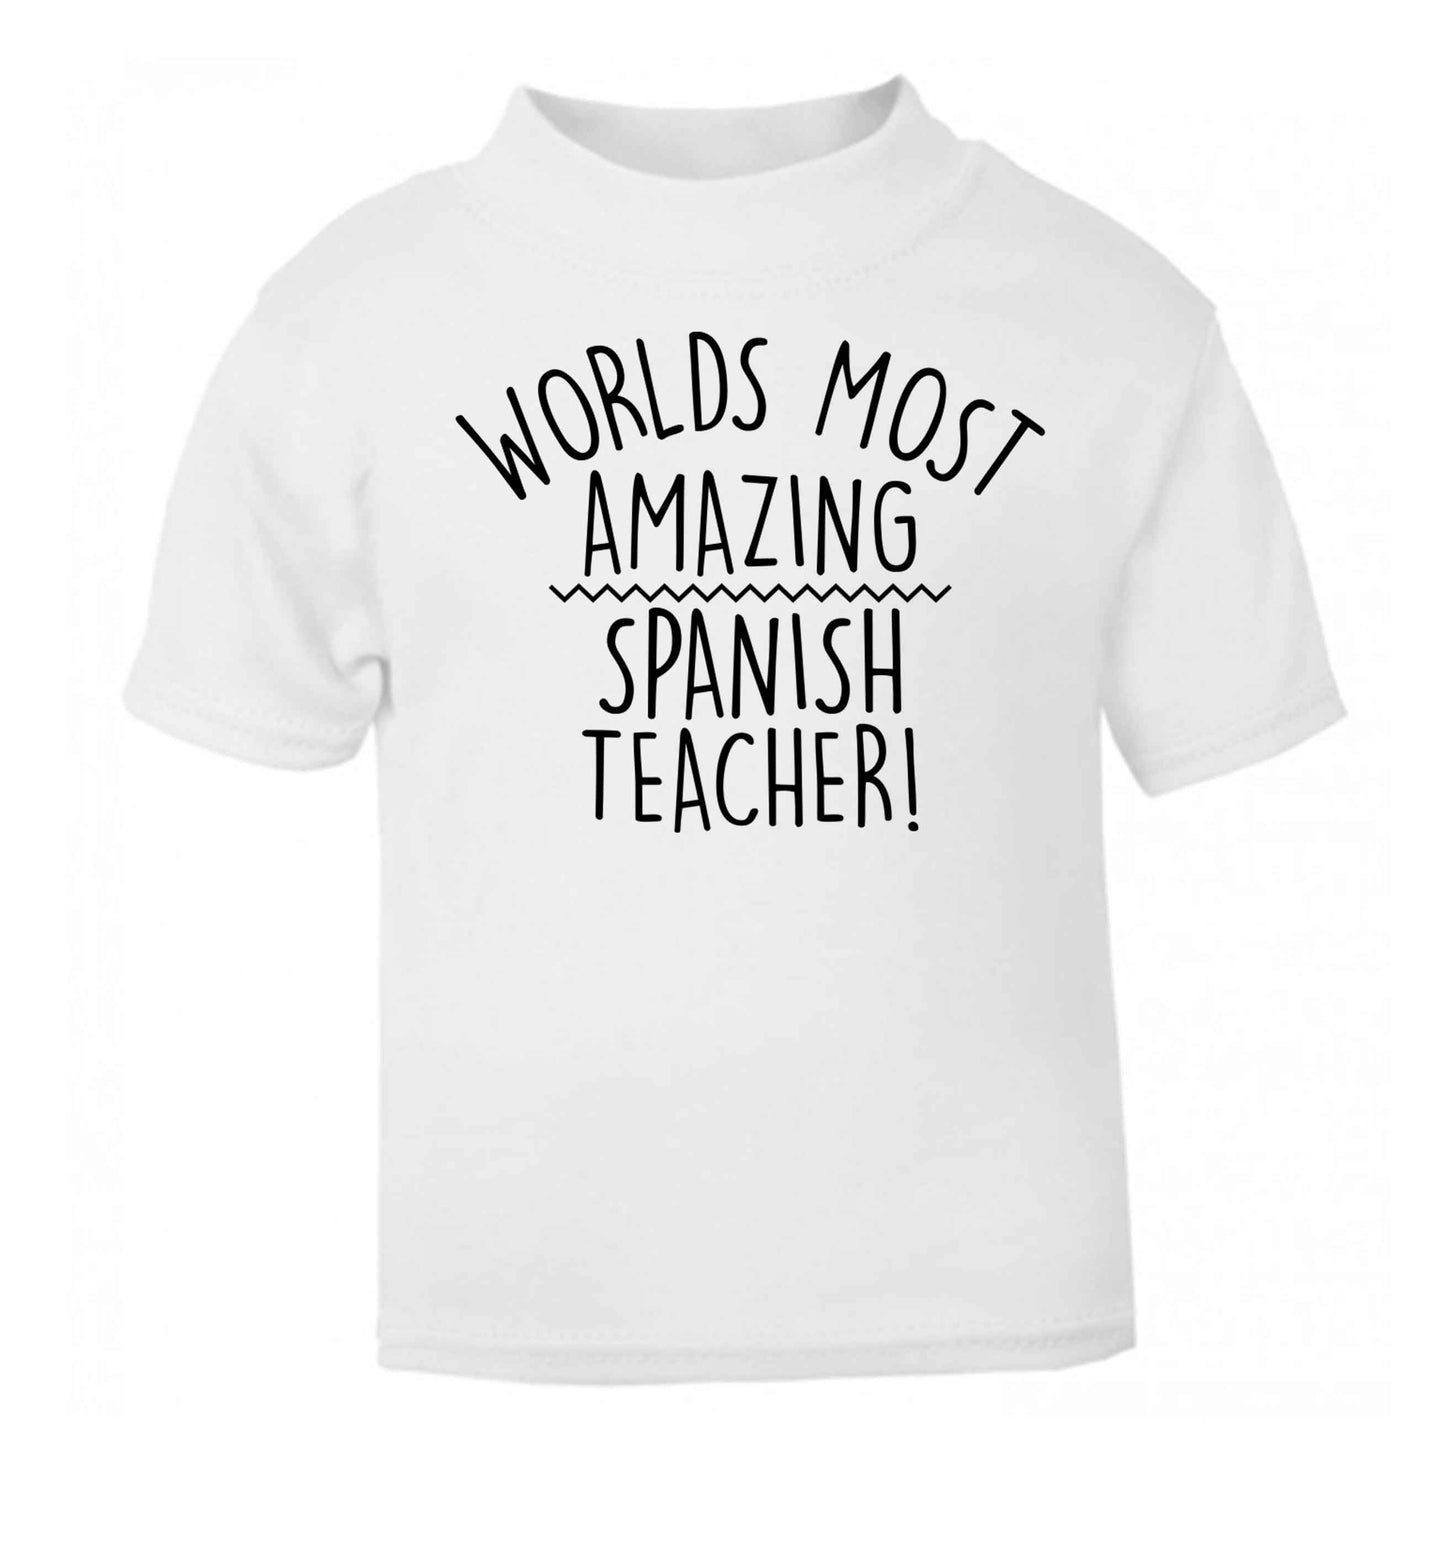 Worlds most amazing Spanish teacher white baby toddler Tshirt 2 Years